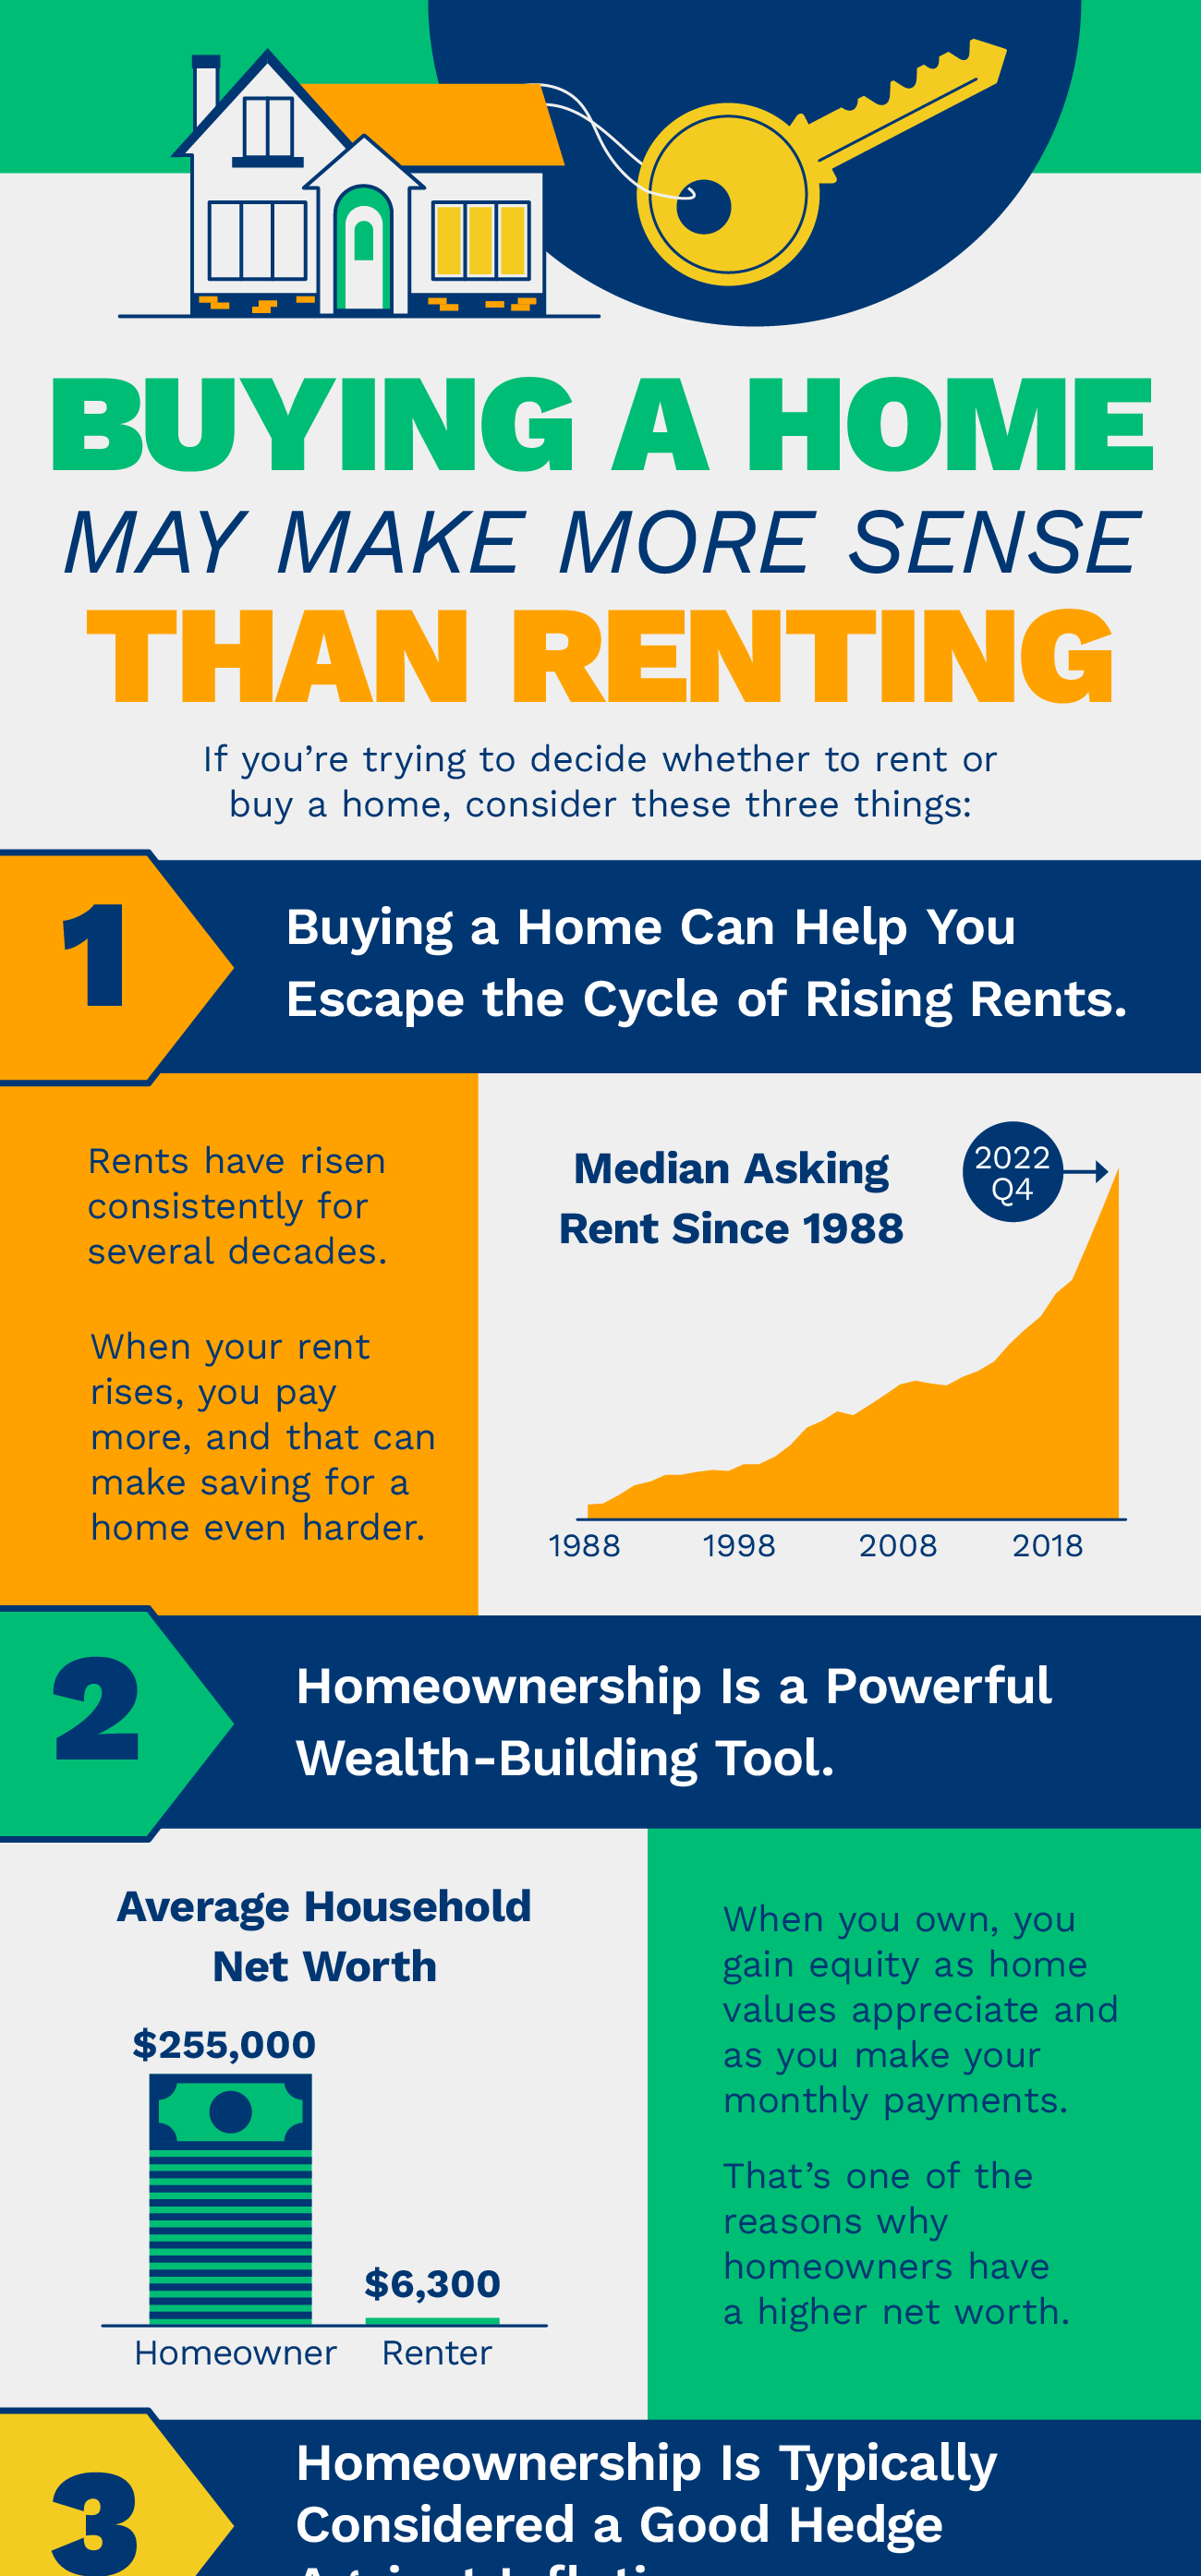 Buying a Home May Make More Sense Than Renting